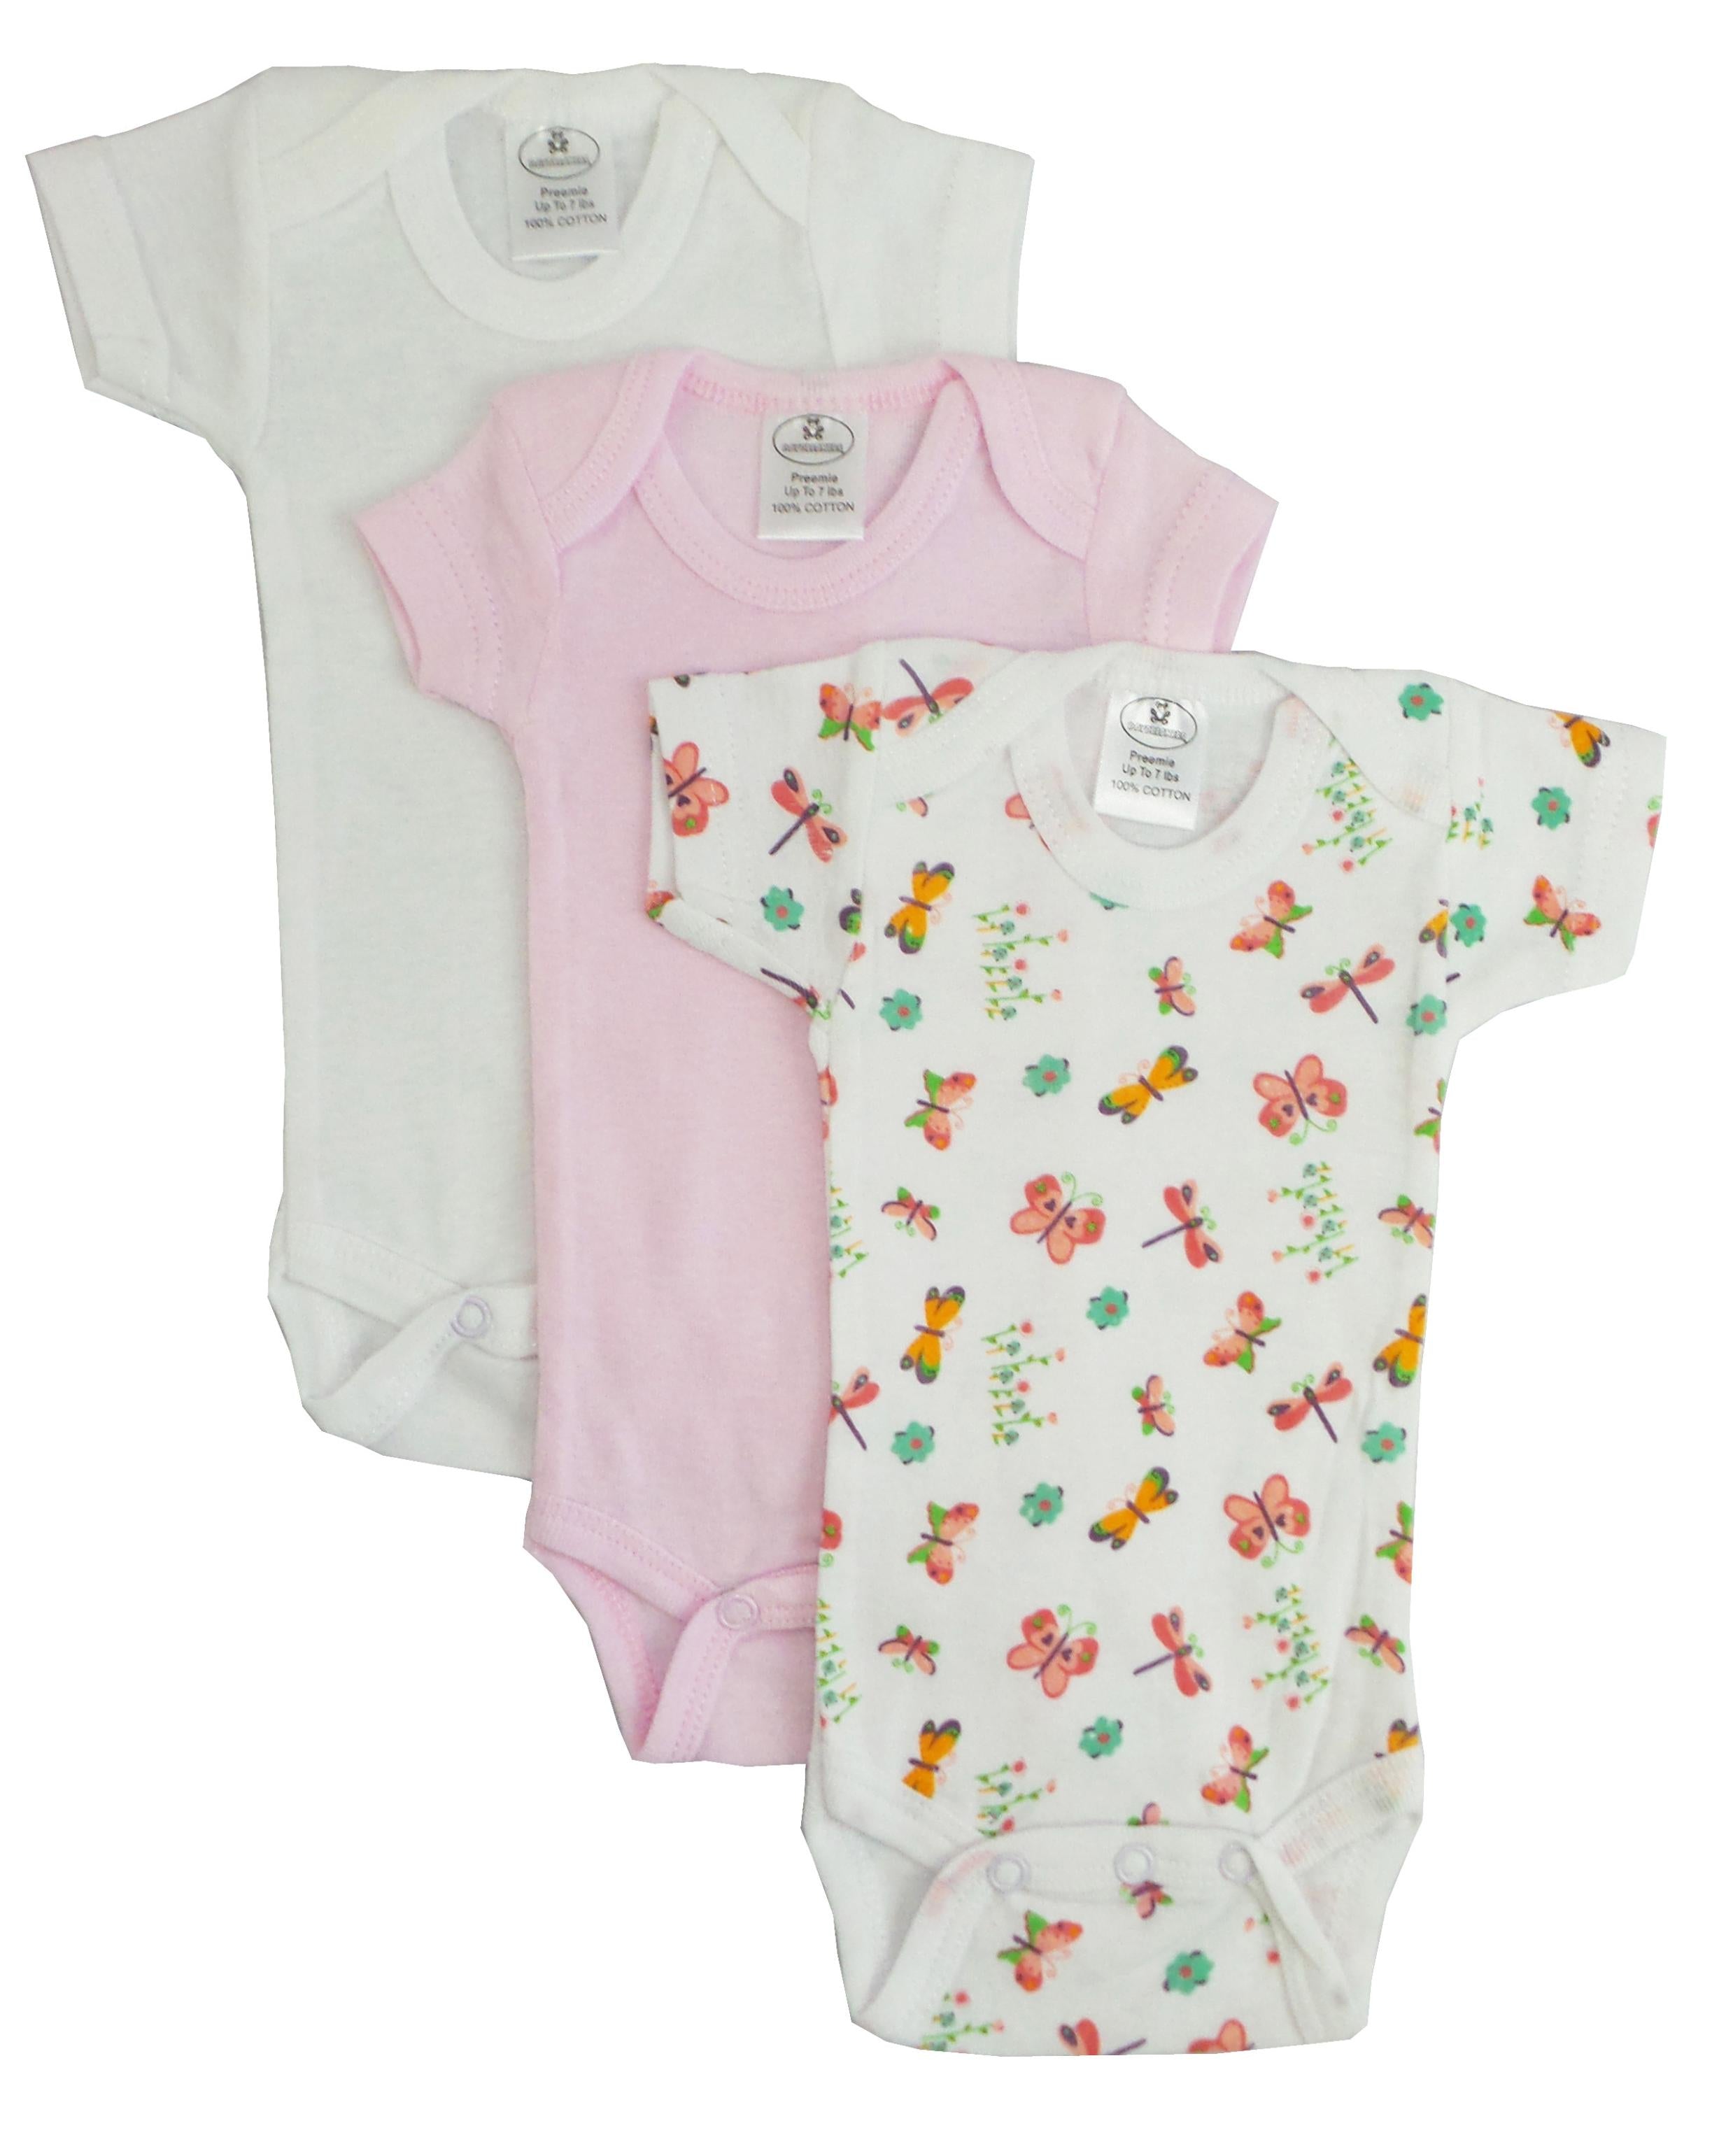 Preemie Girls Printed Short Sleeve Variety Pack GreatEagleInc